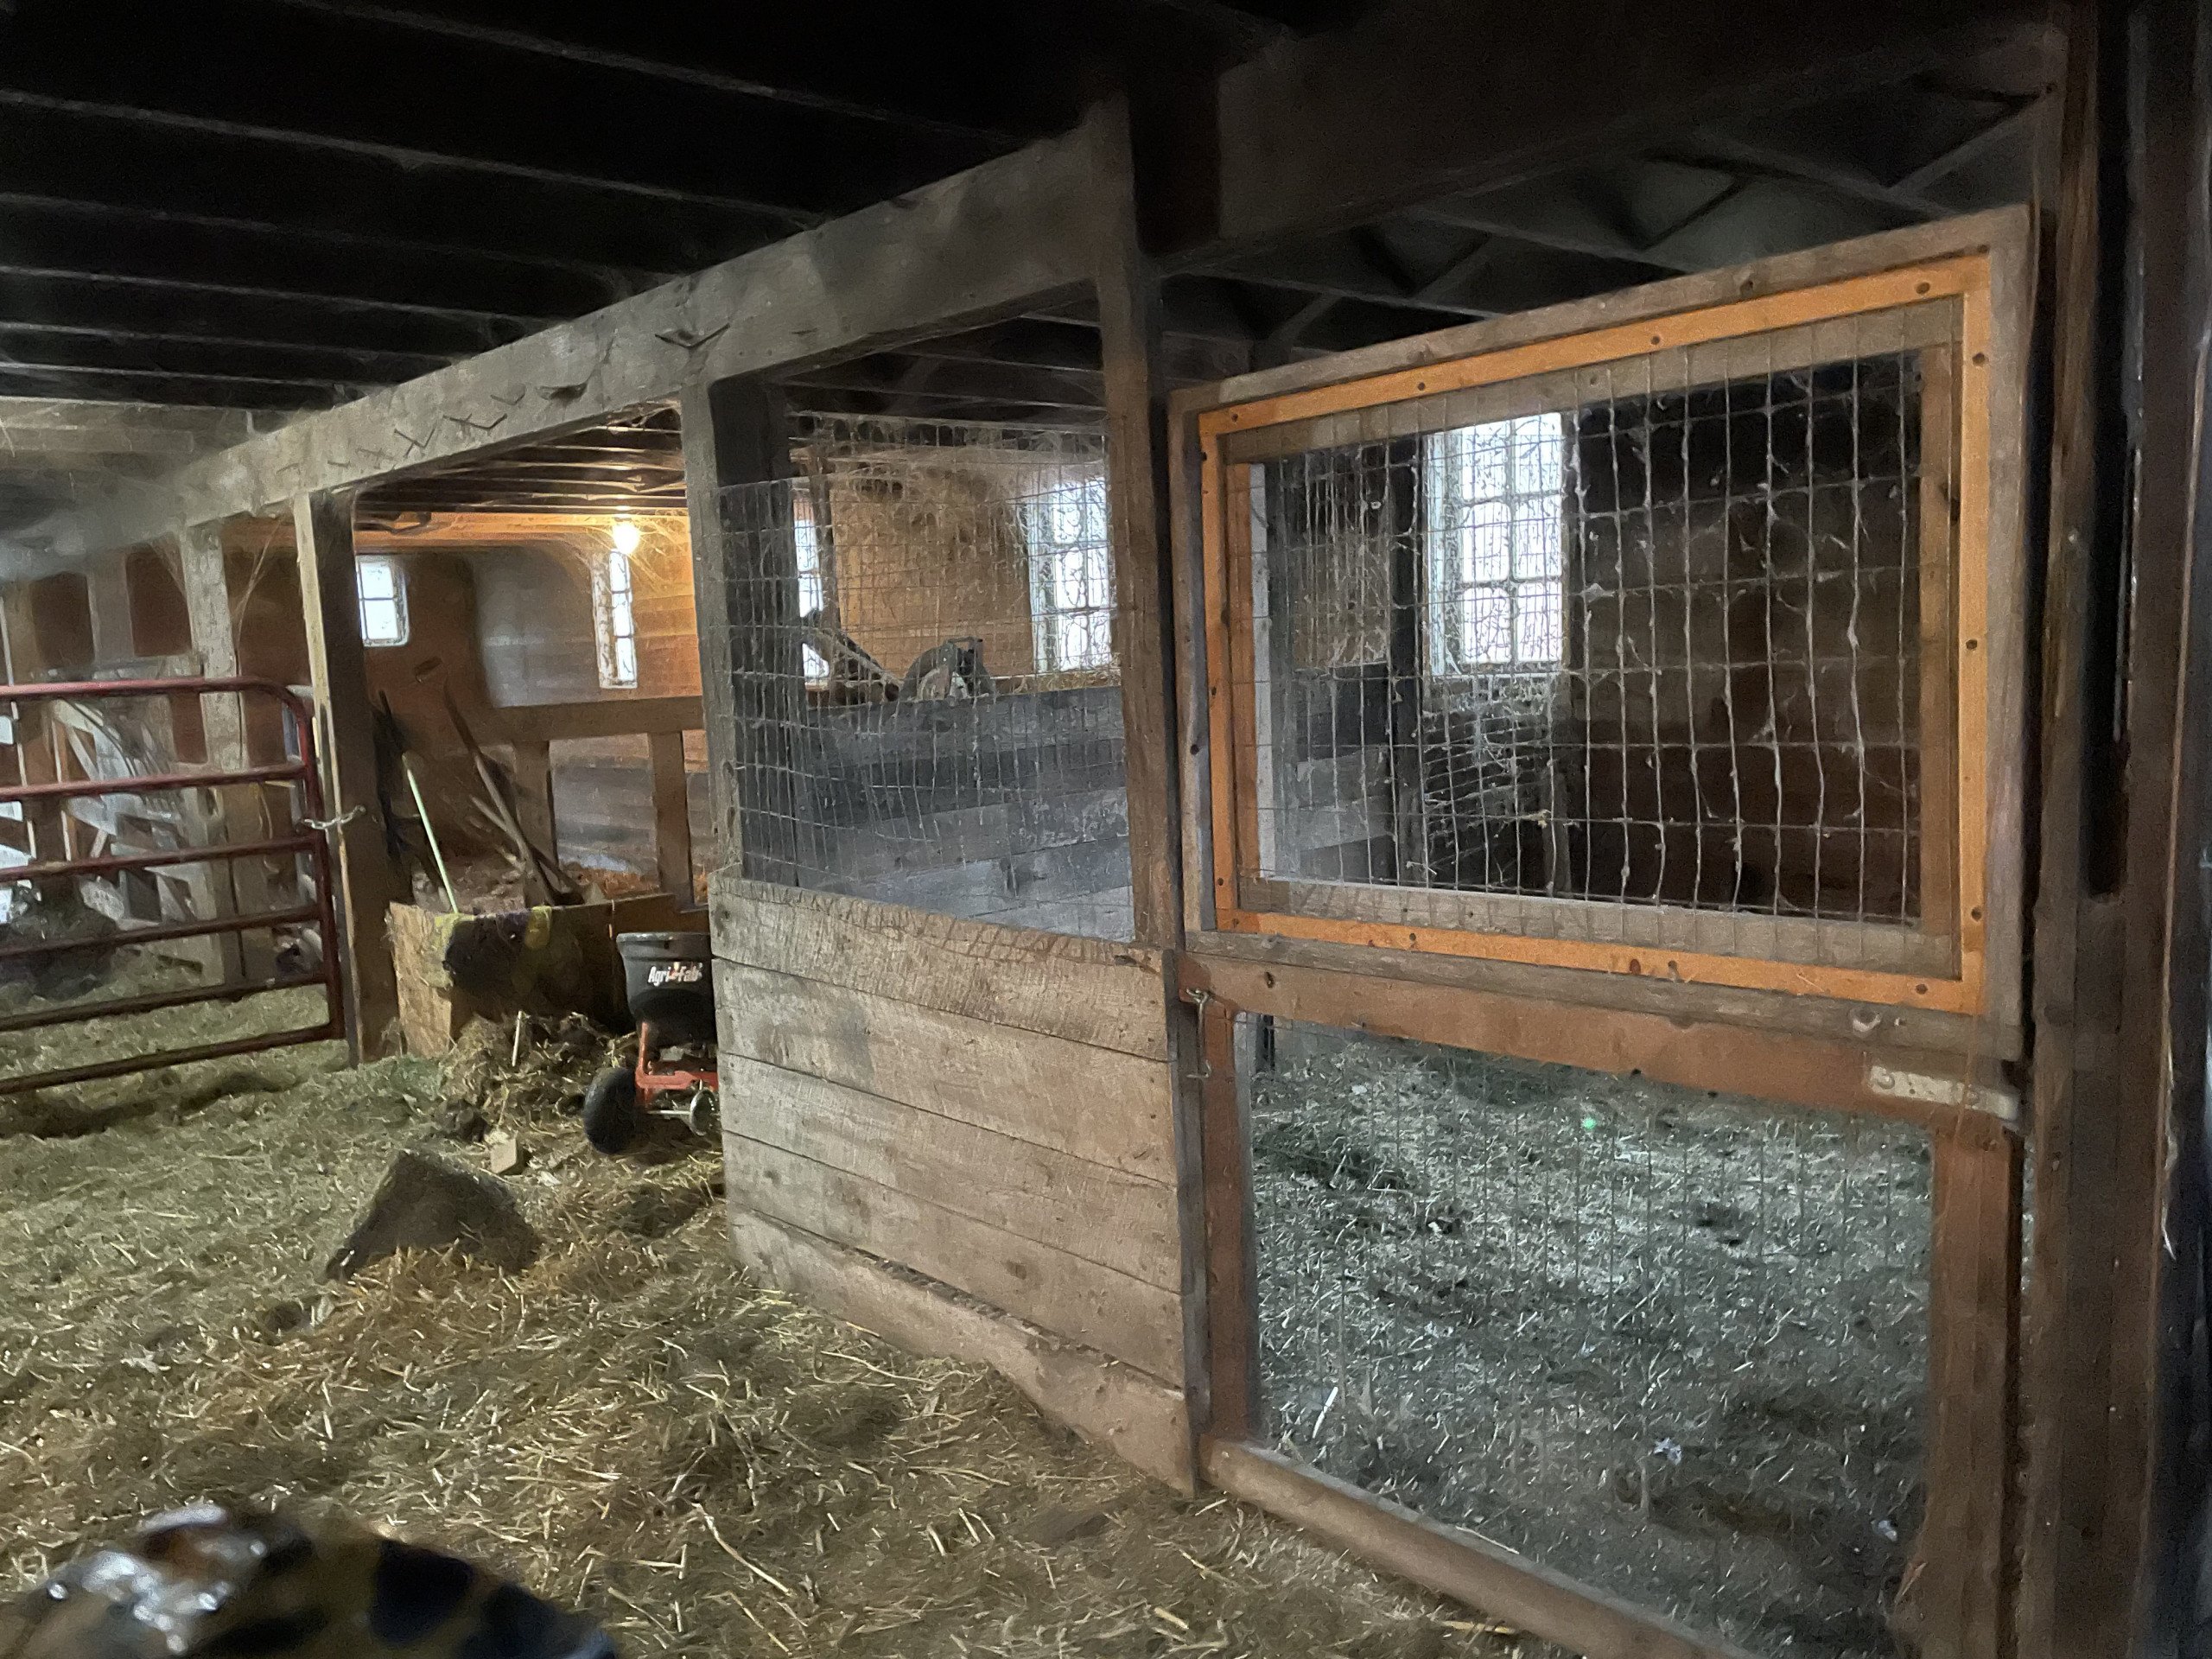 Inside of the Barn 